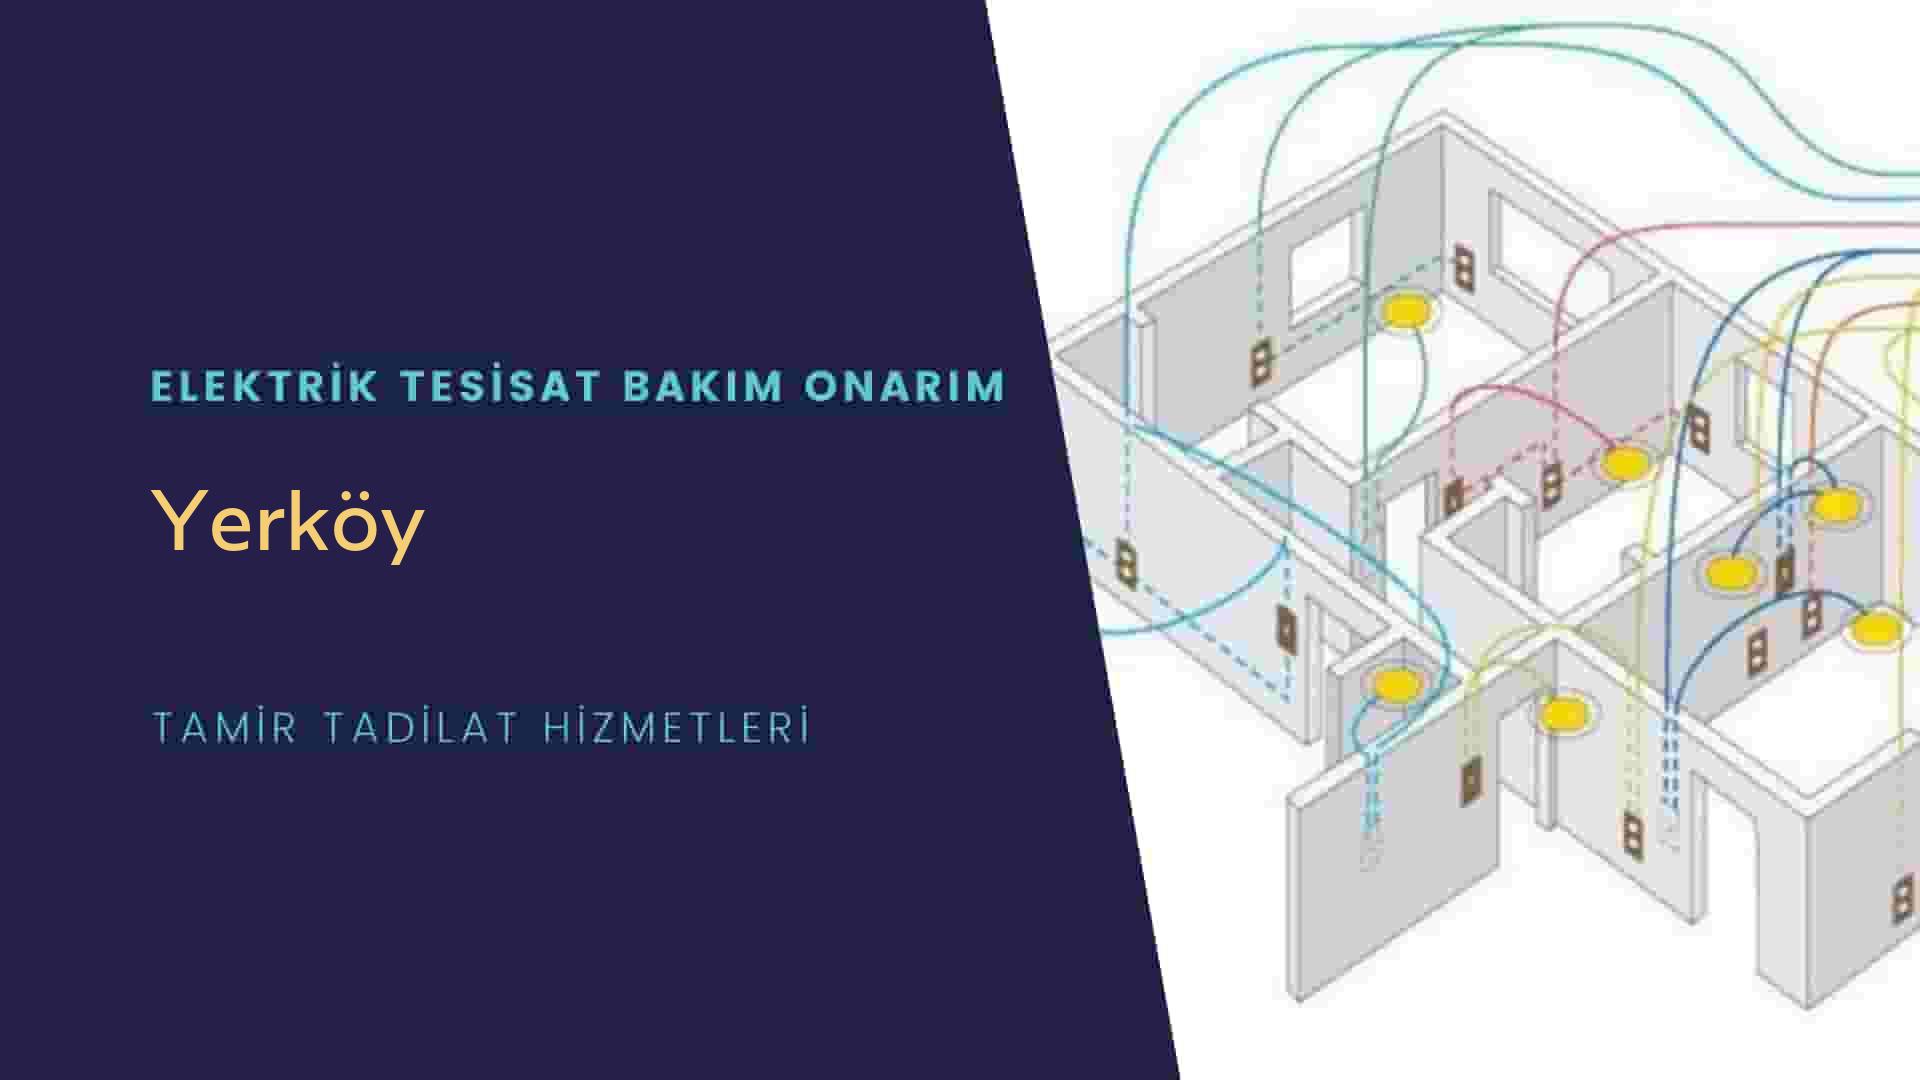 Yerköy'de elektrik tesisatı ustalarımı arıyorsunuz doğru adrestenizi Yerköy elektrik tesisatı ustalarımız 7/24 sizlere hizmet vermekten mutluluk duyar.